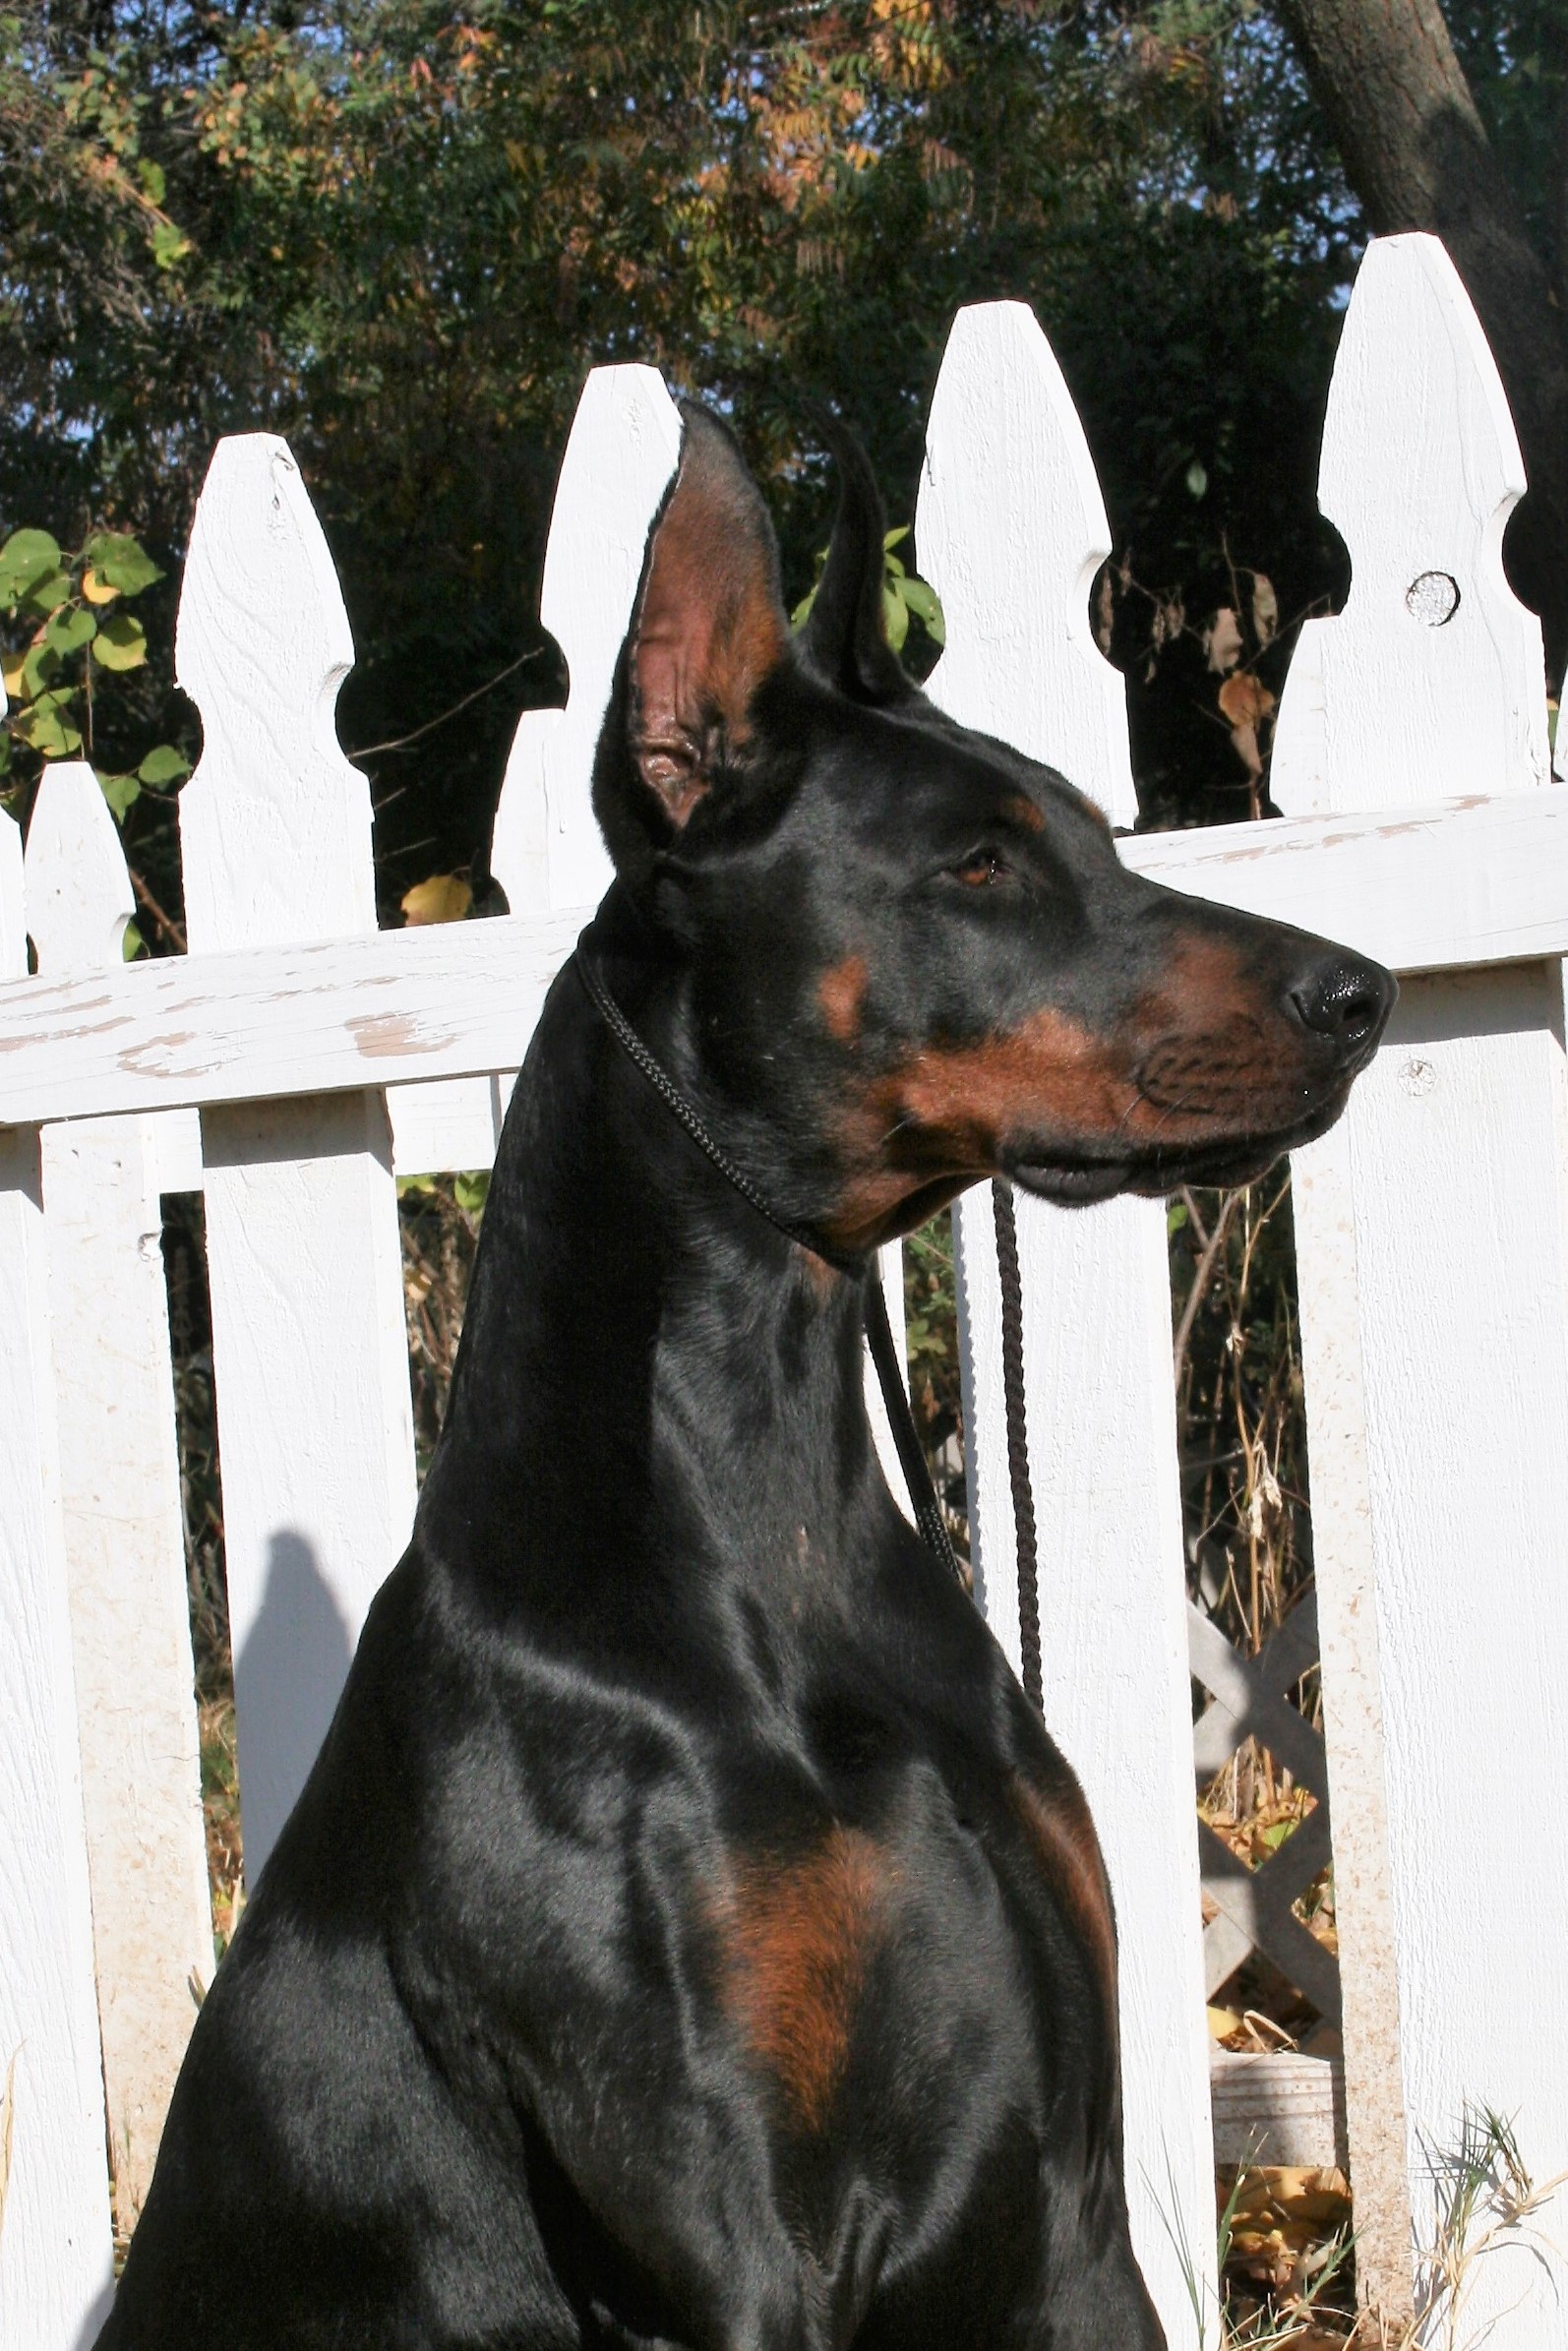 Dog Profile